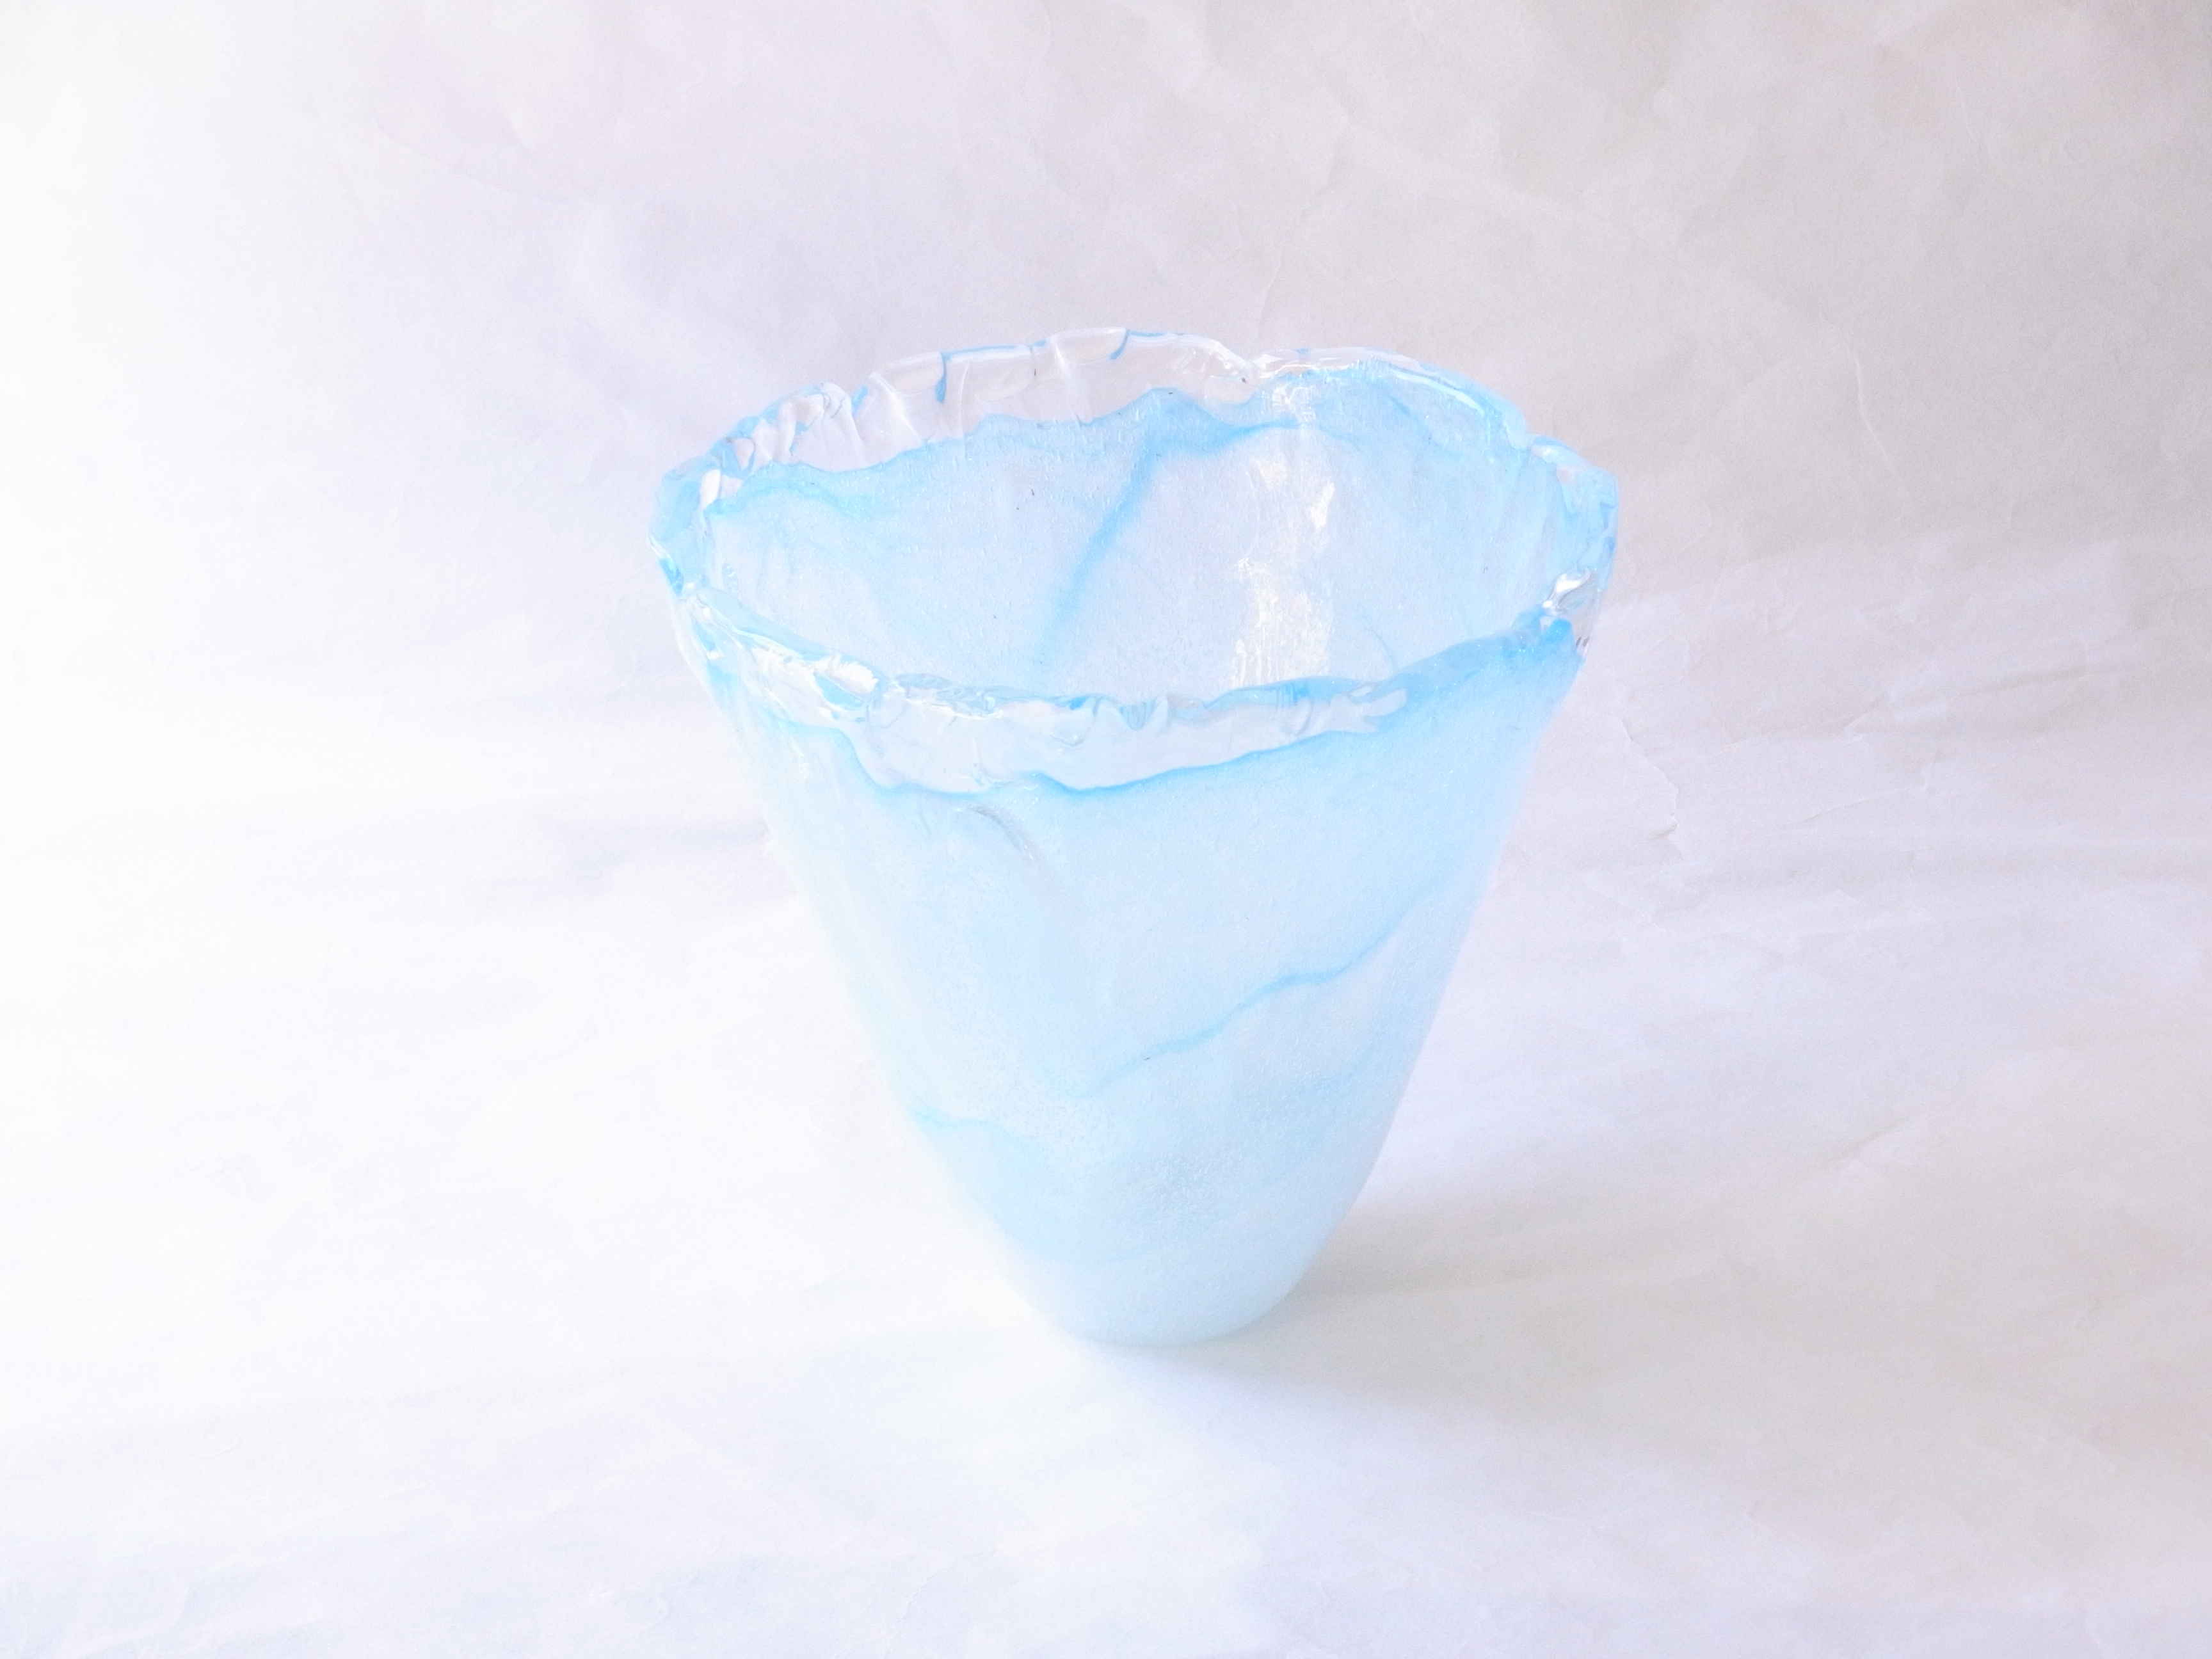 日本製 手づくりガラス 花器 泡ブルー | 小林漆陶 映える器ギャラリー 岐阜市| 日本一の漆陶器 茶道具の品揃えと在庫 | 漆器 陶器 茶華道具